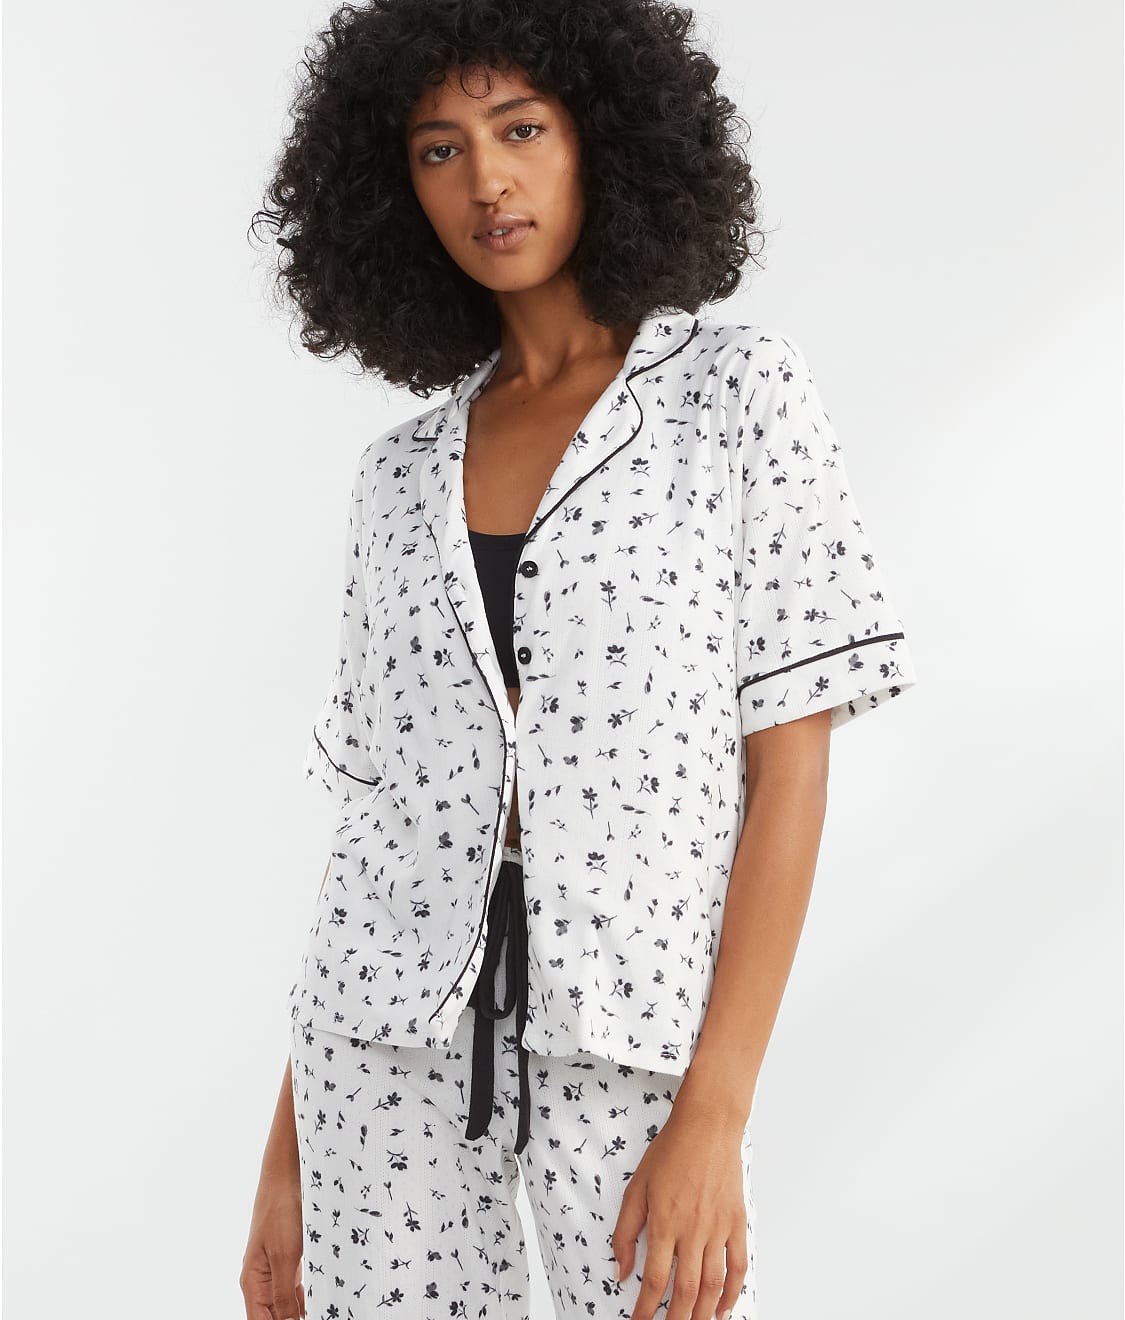 PJ Salvage Women's Loungewear Around The Edges Pajama Pj Set